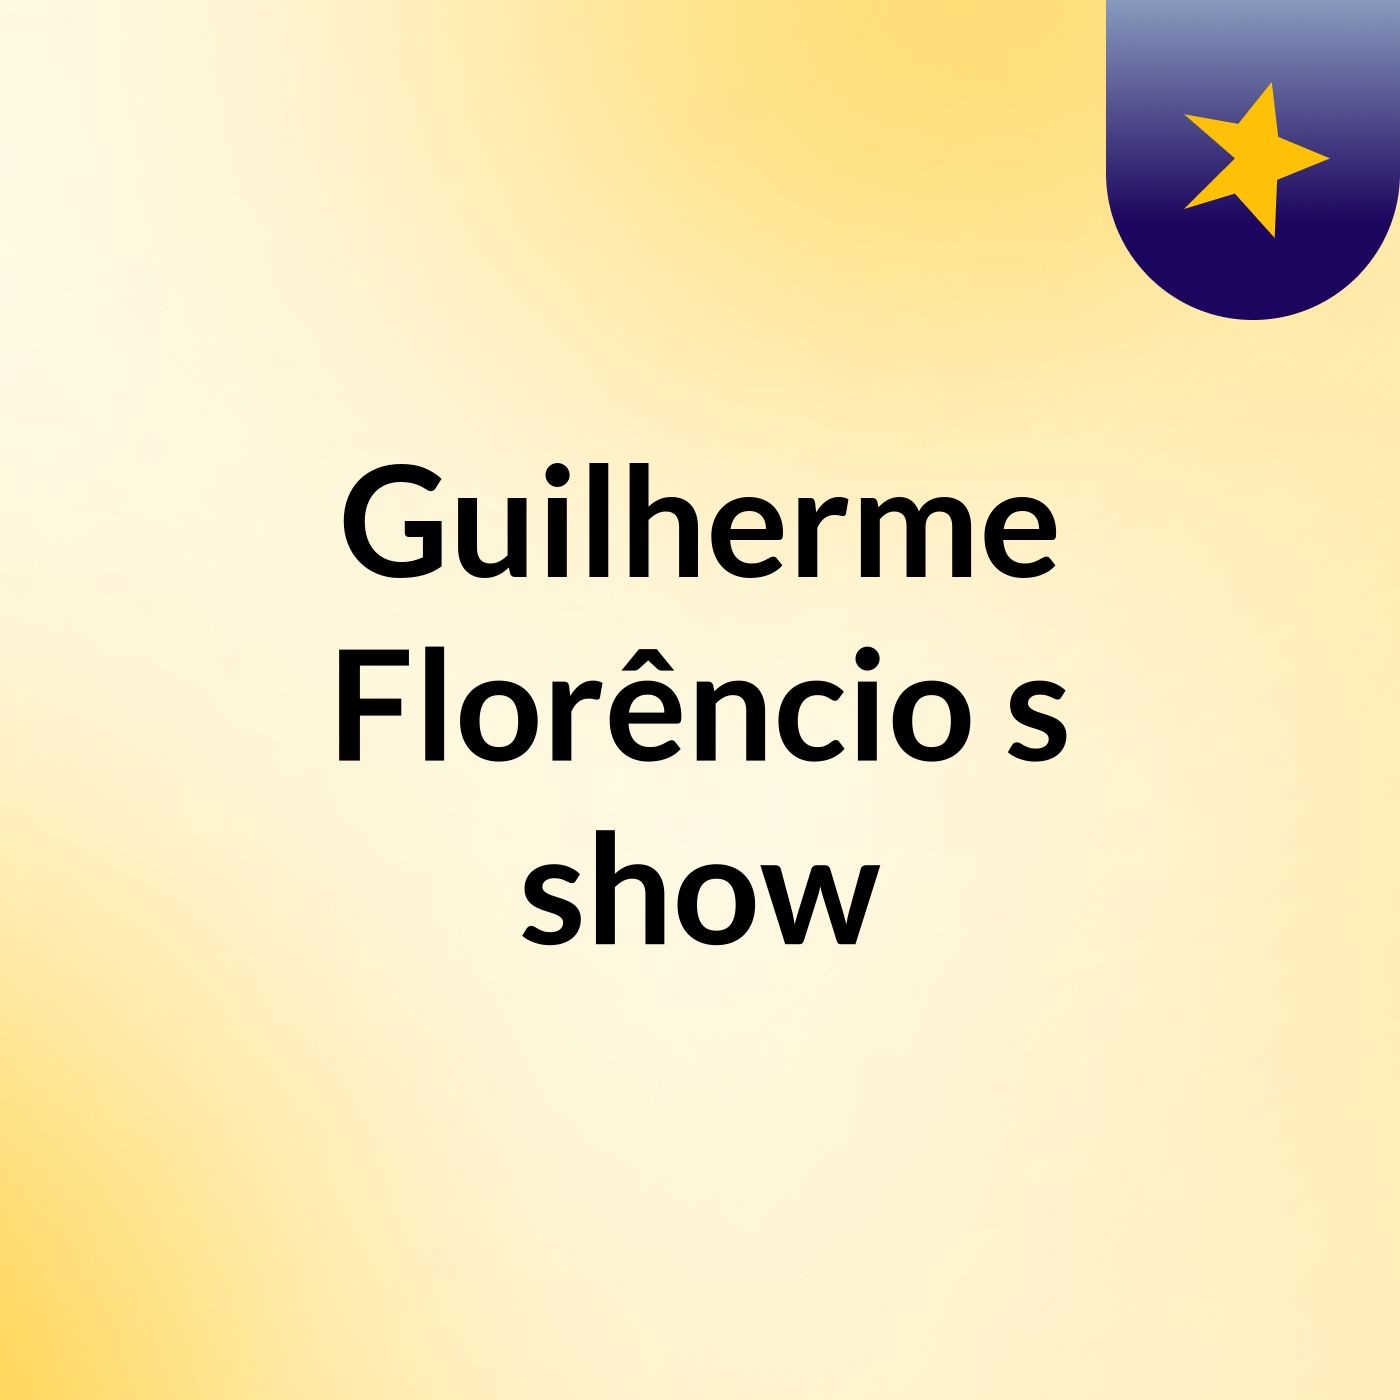 Guilherme Florêncio's show